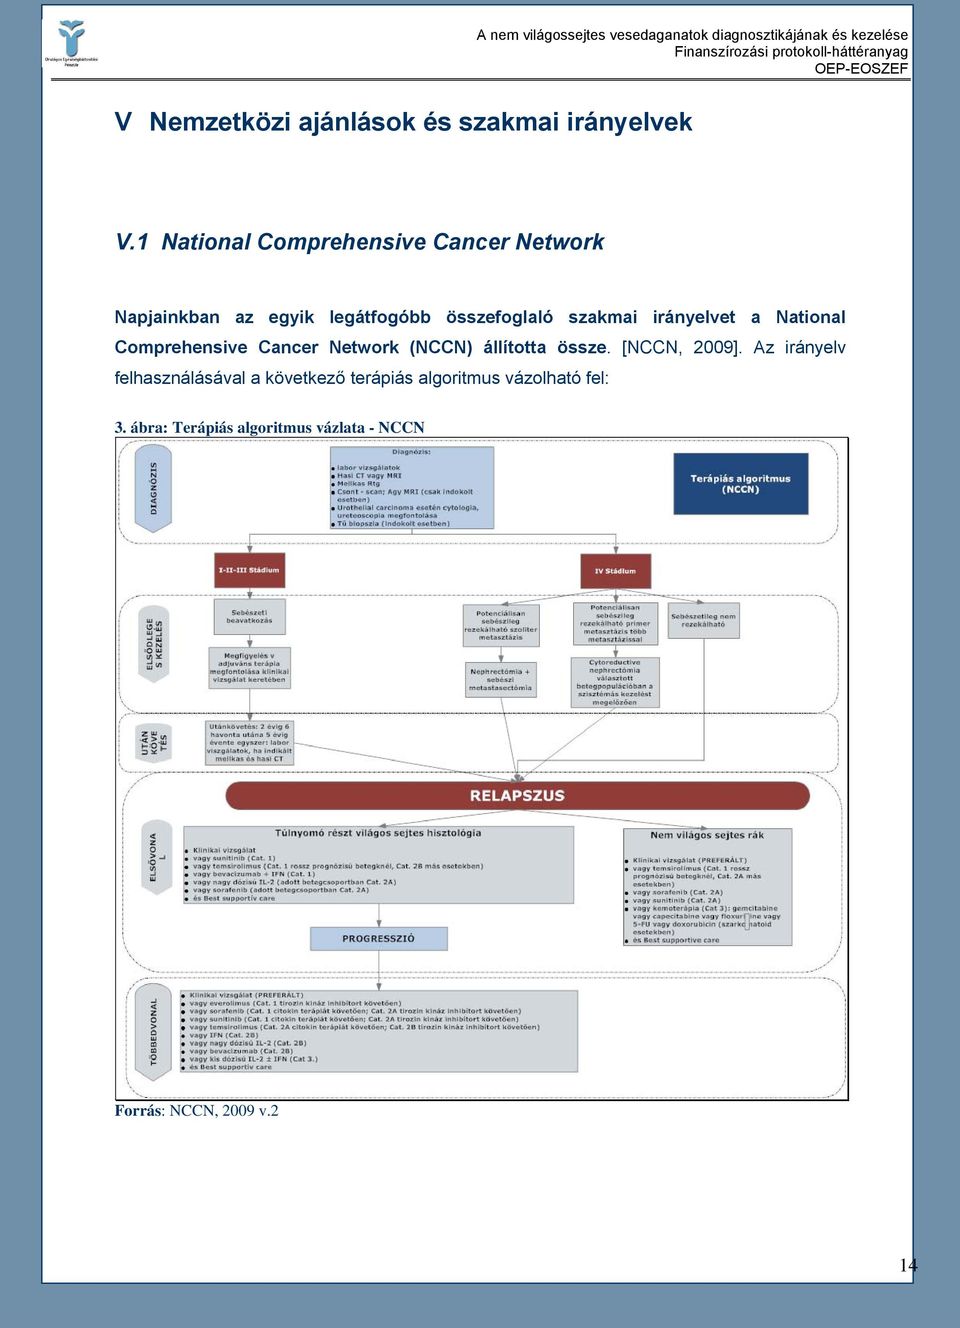 irányelvet a National Comprehensive Cancer Network (NCCN) állította össze. [NCCN, 2009].